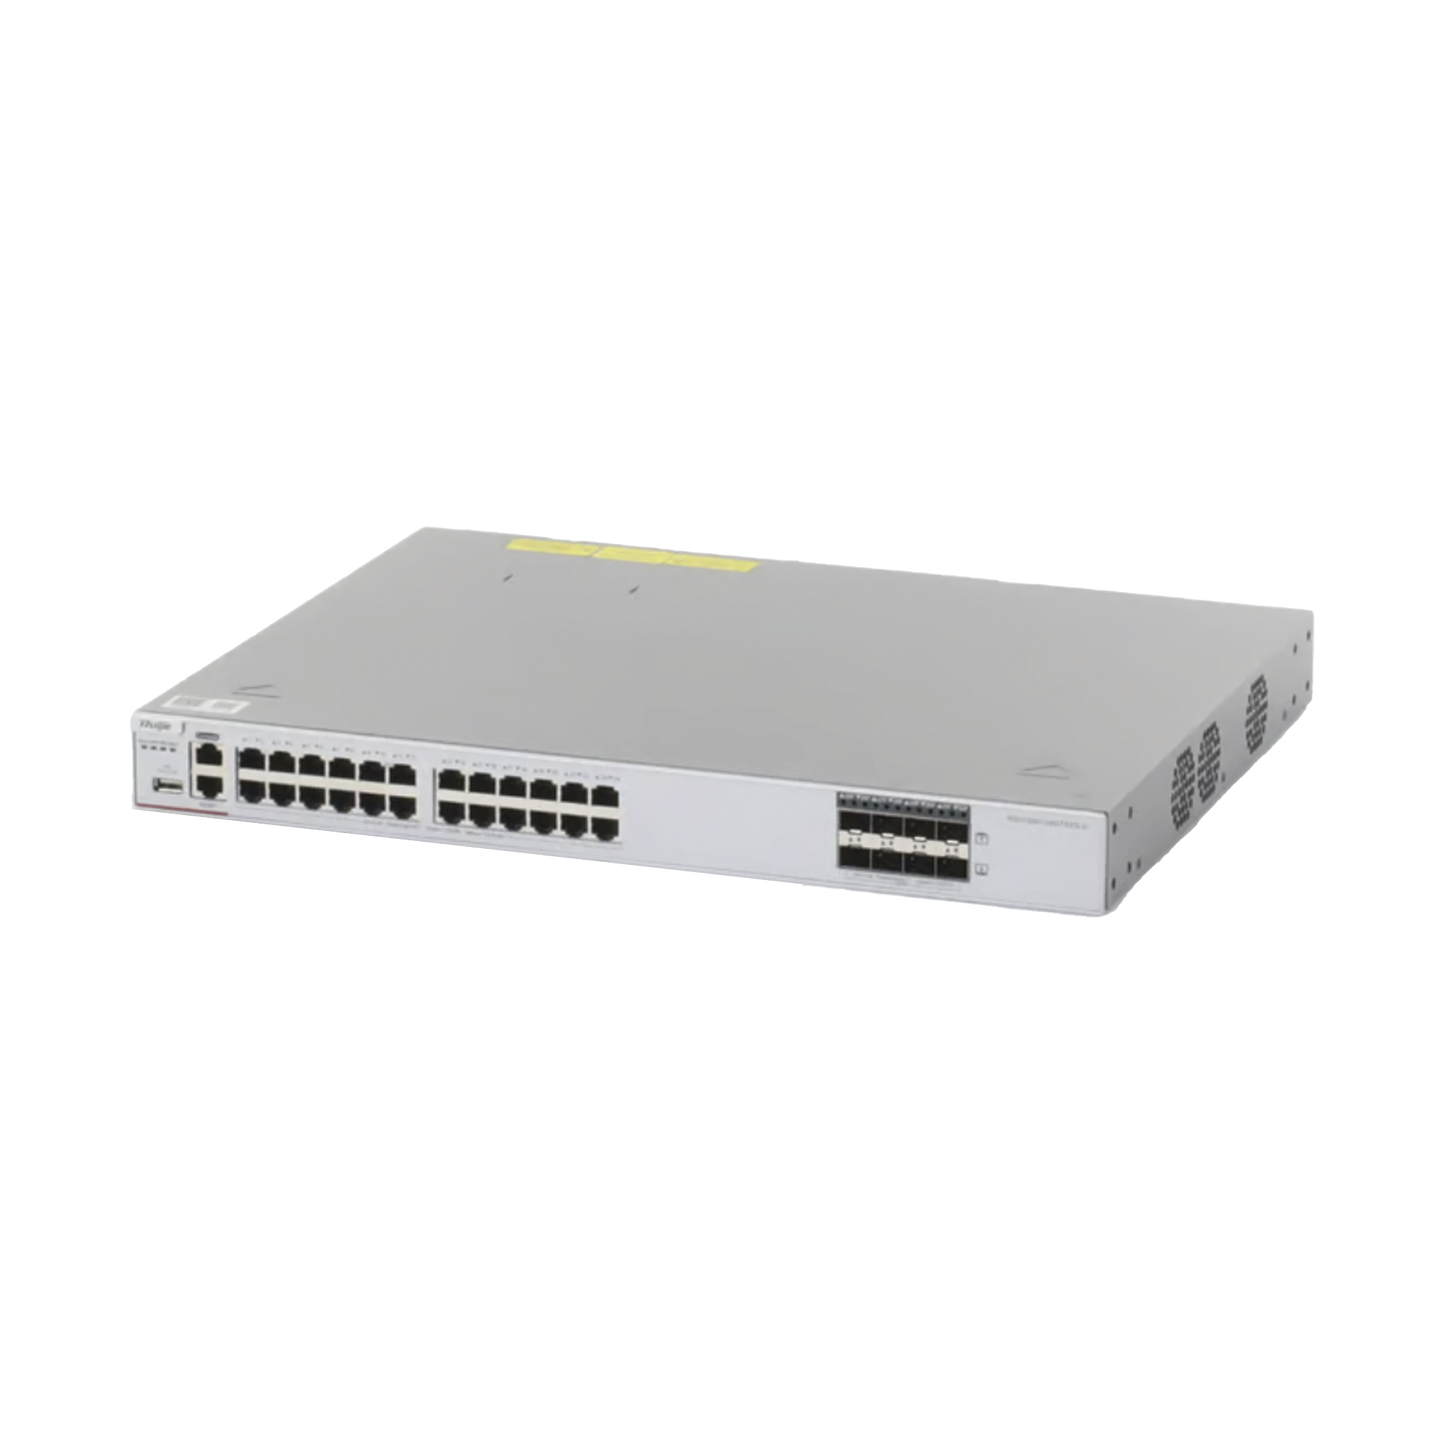 Switch Core Administrable Capa 3 con 24 puertos Gigabit + 8 SFP+ para fibra 10Gb, gestión gratuita desde la nube.